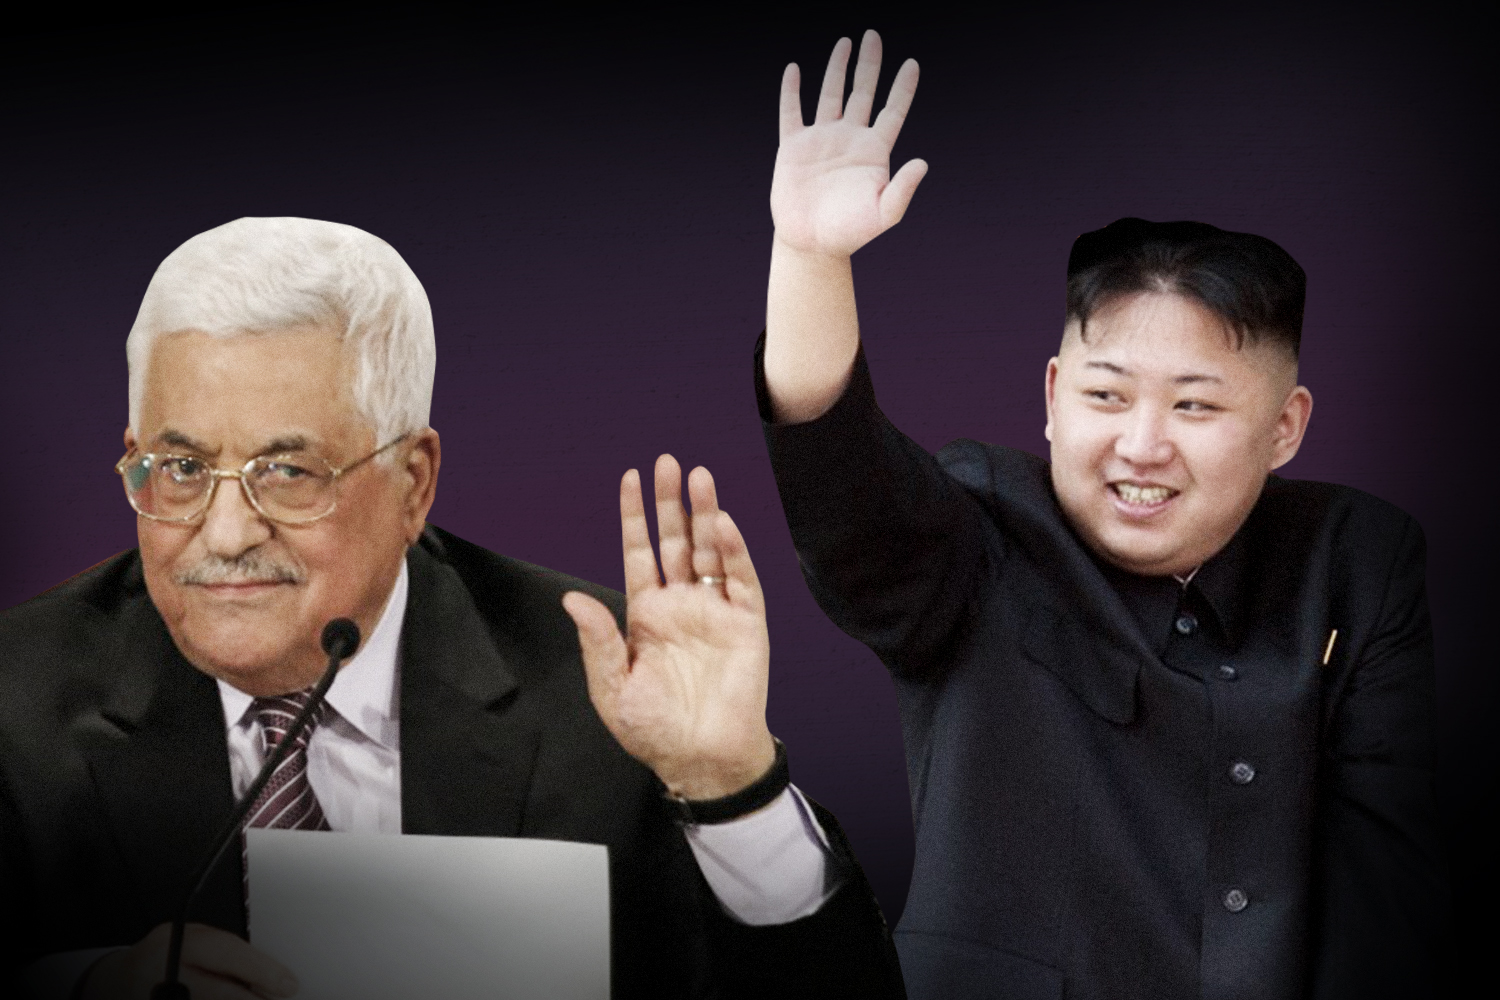 الرئيس عباس يسلم الزعيم الكوري الشمالي رسالة خطية